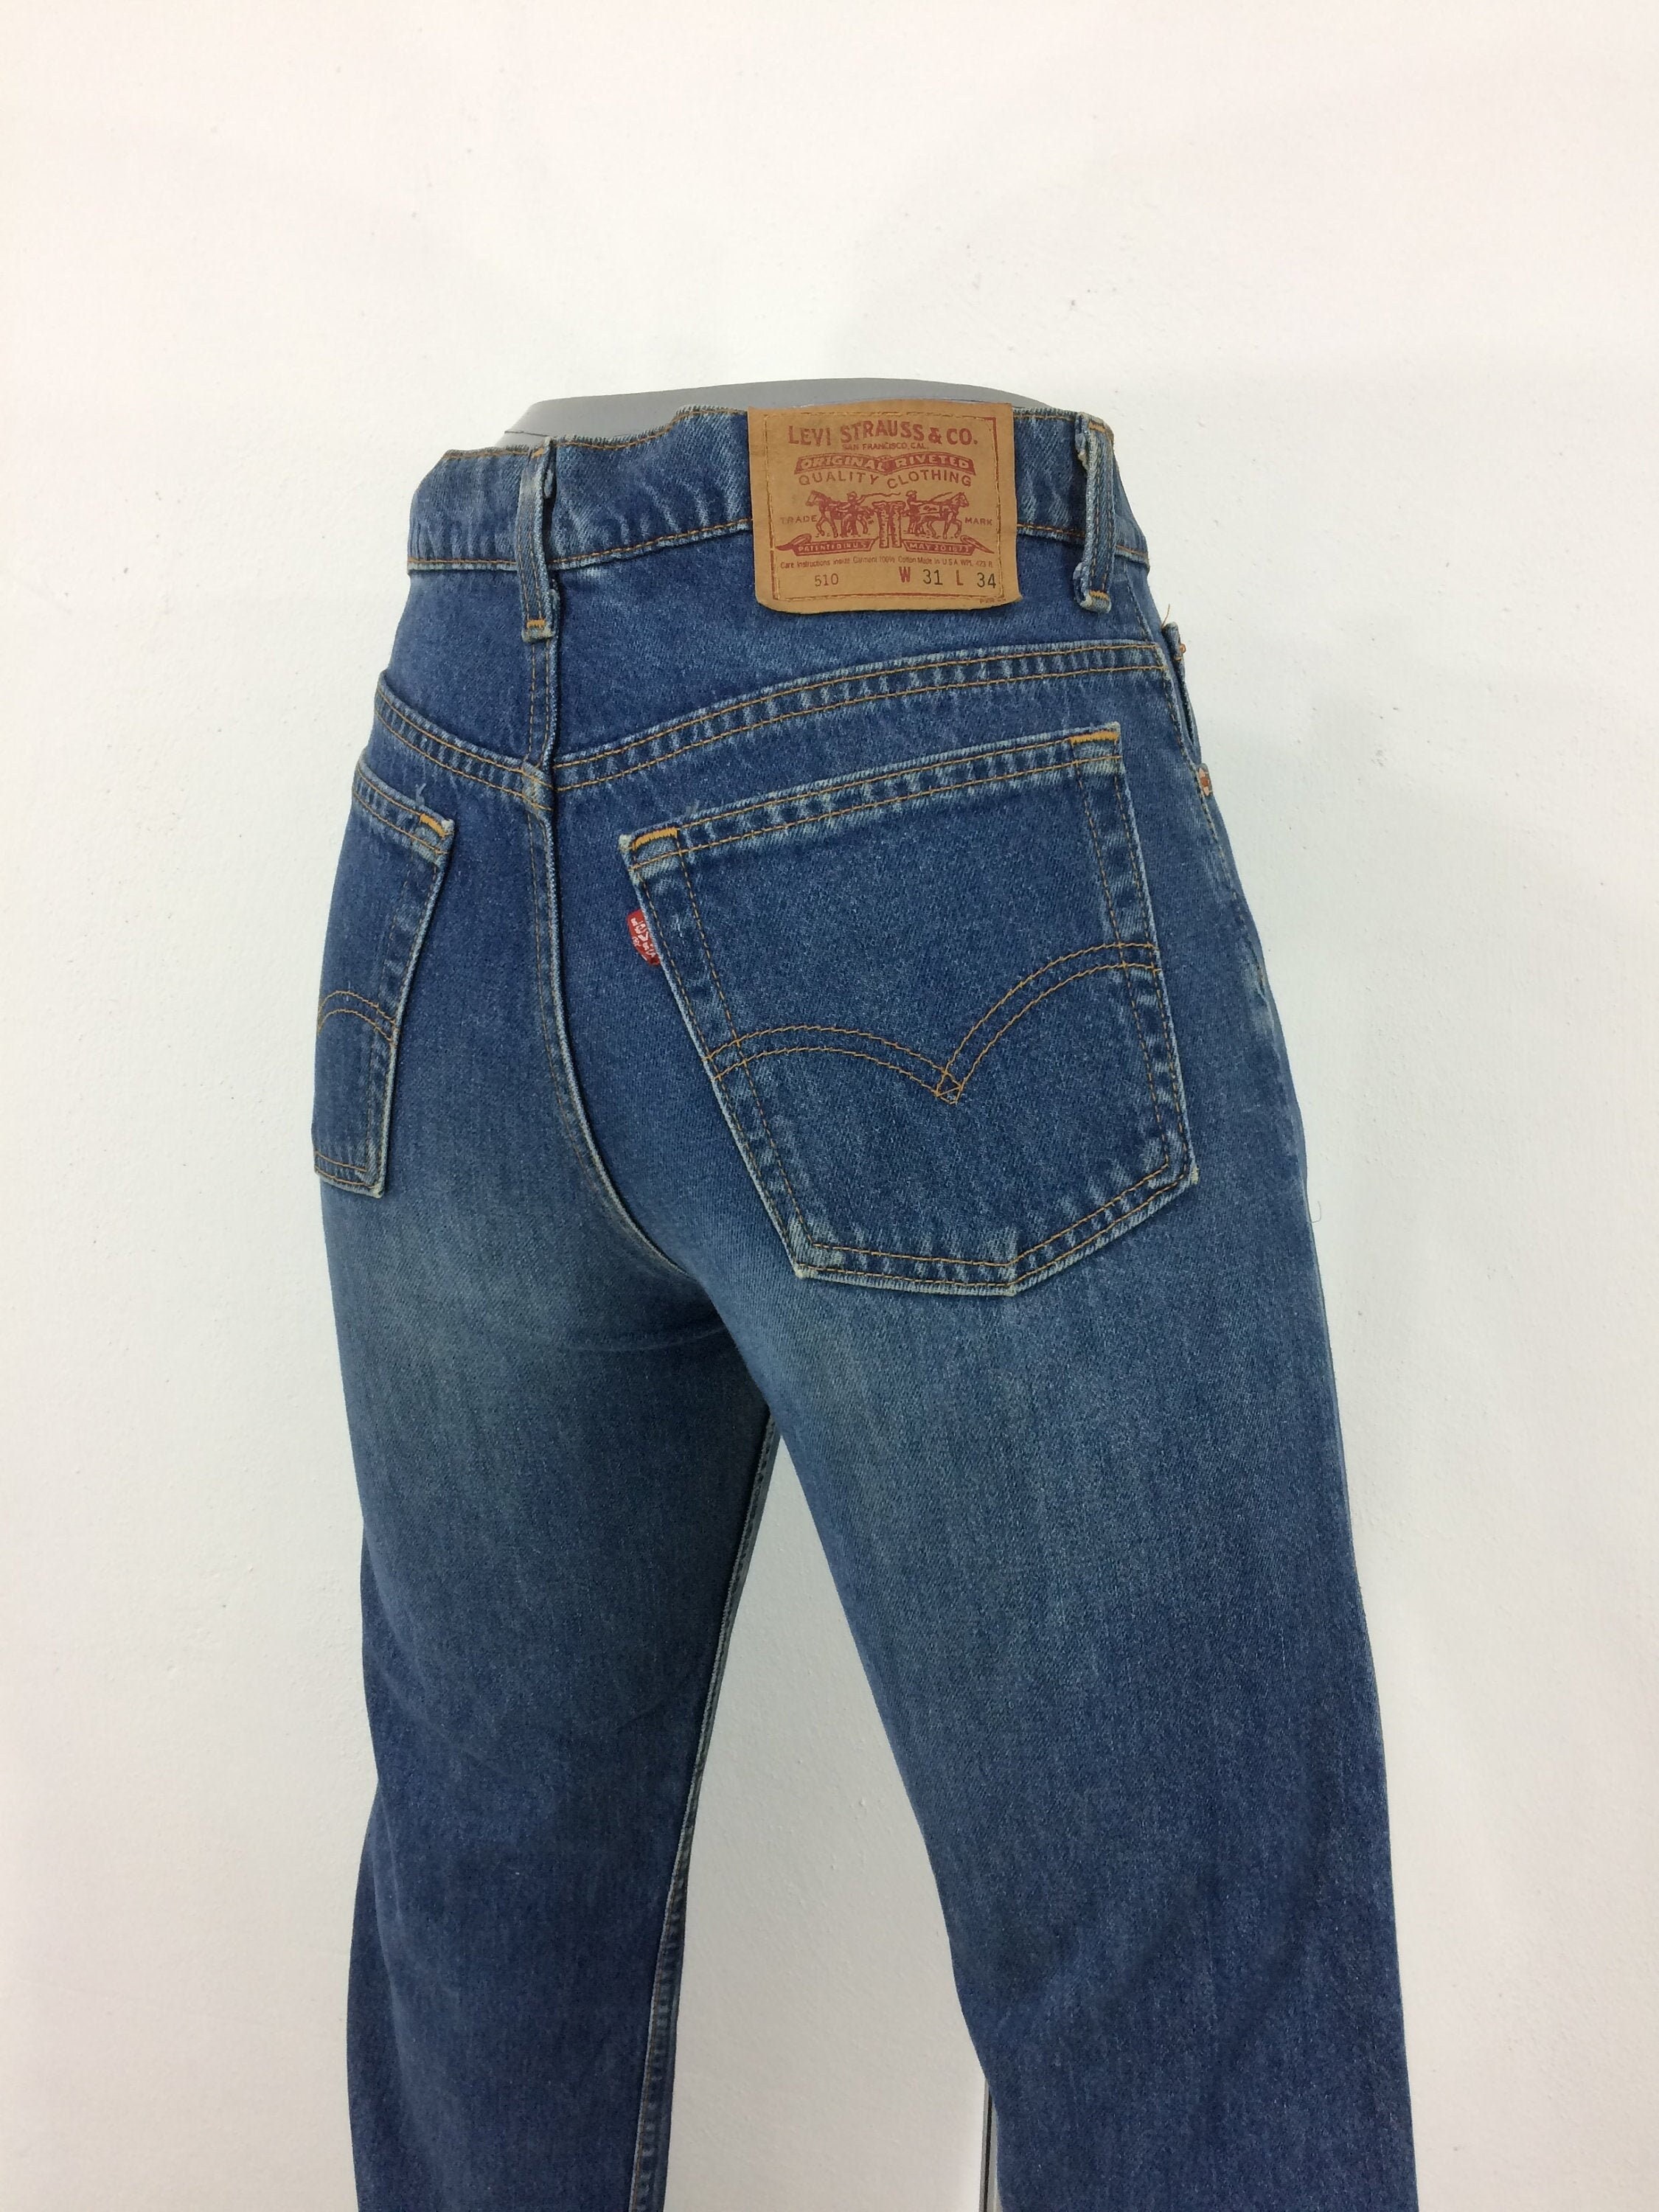 Sz 30 Vintage Levis 510 Women's Jeans W30 L26 High - Etsy